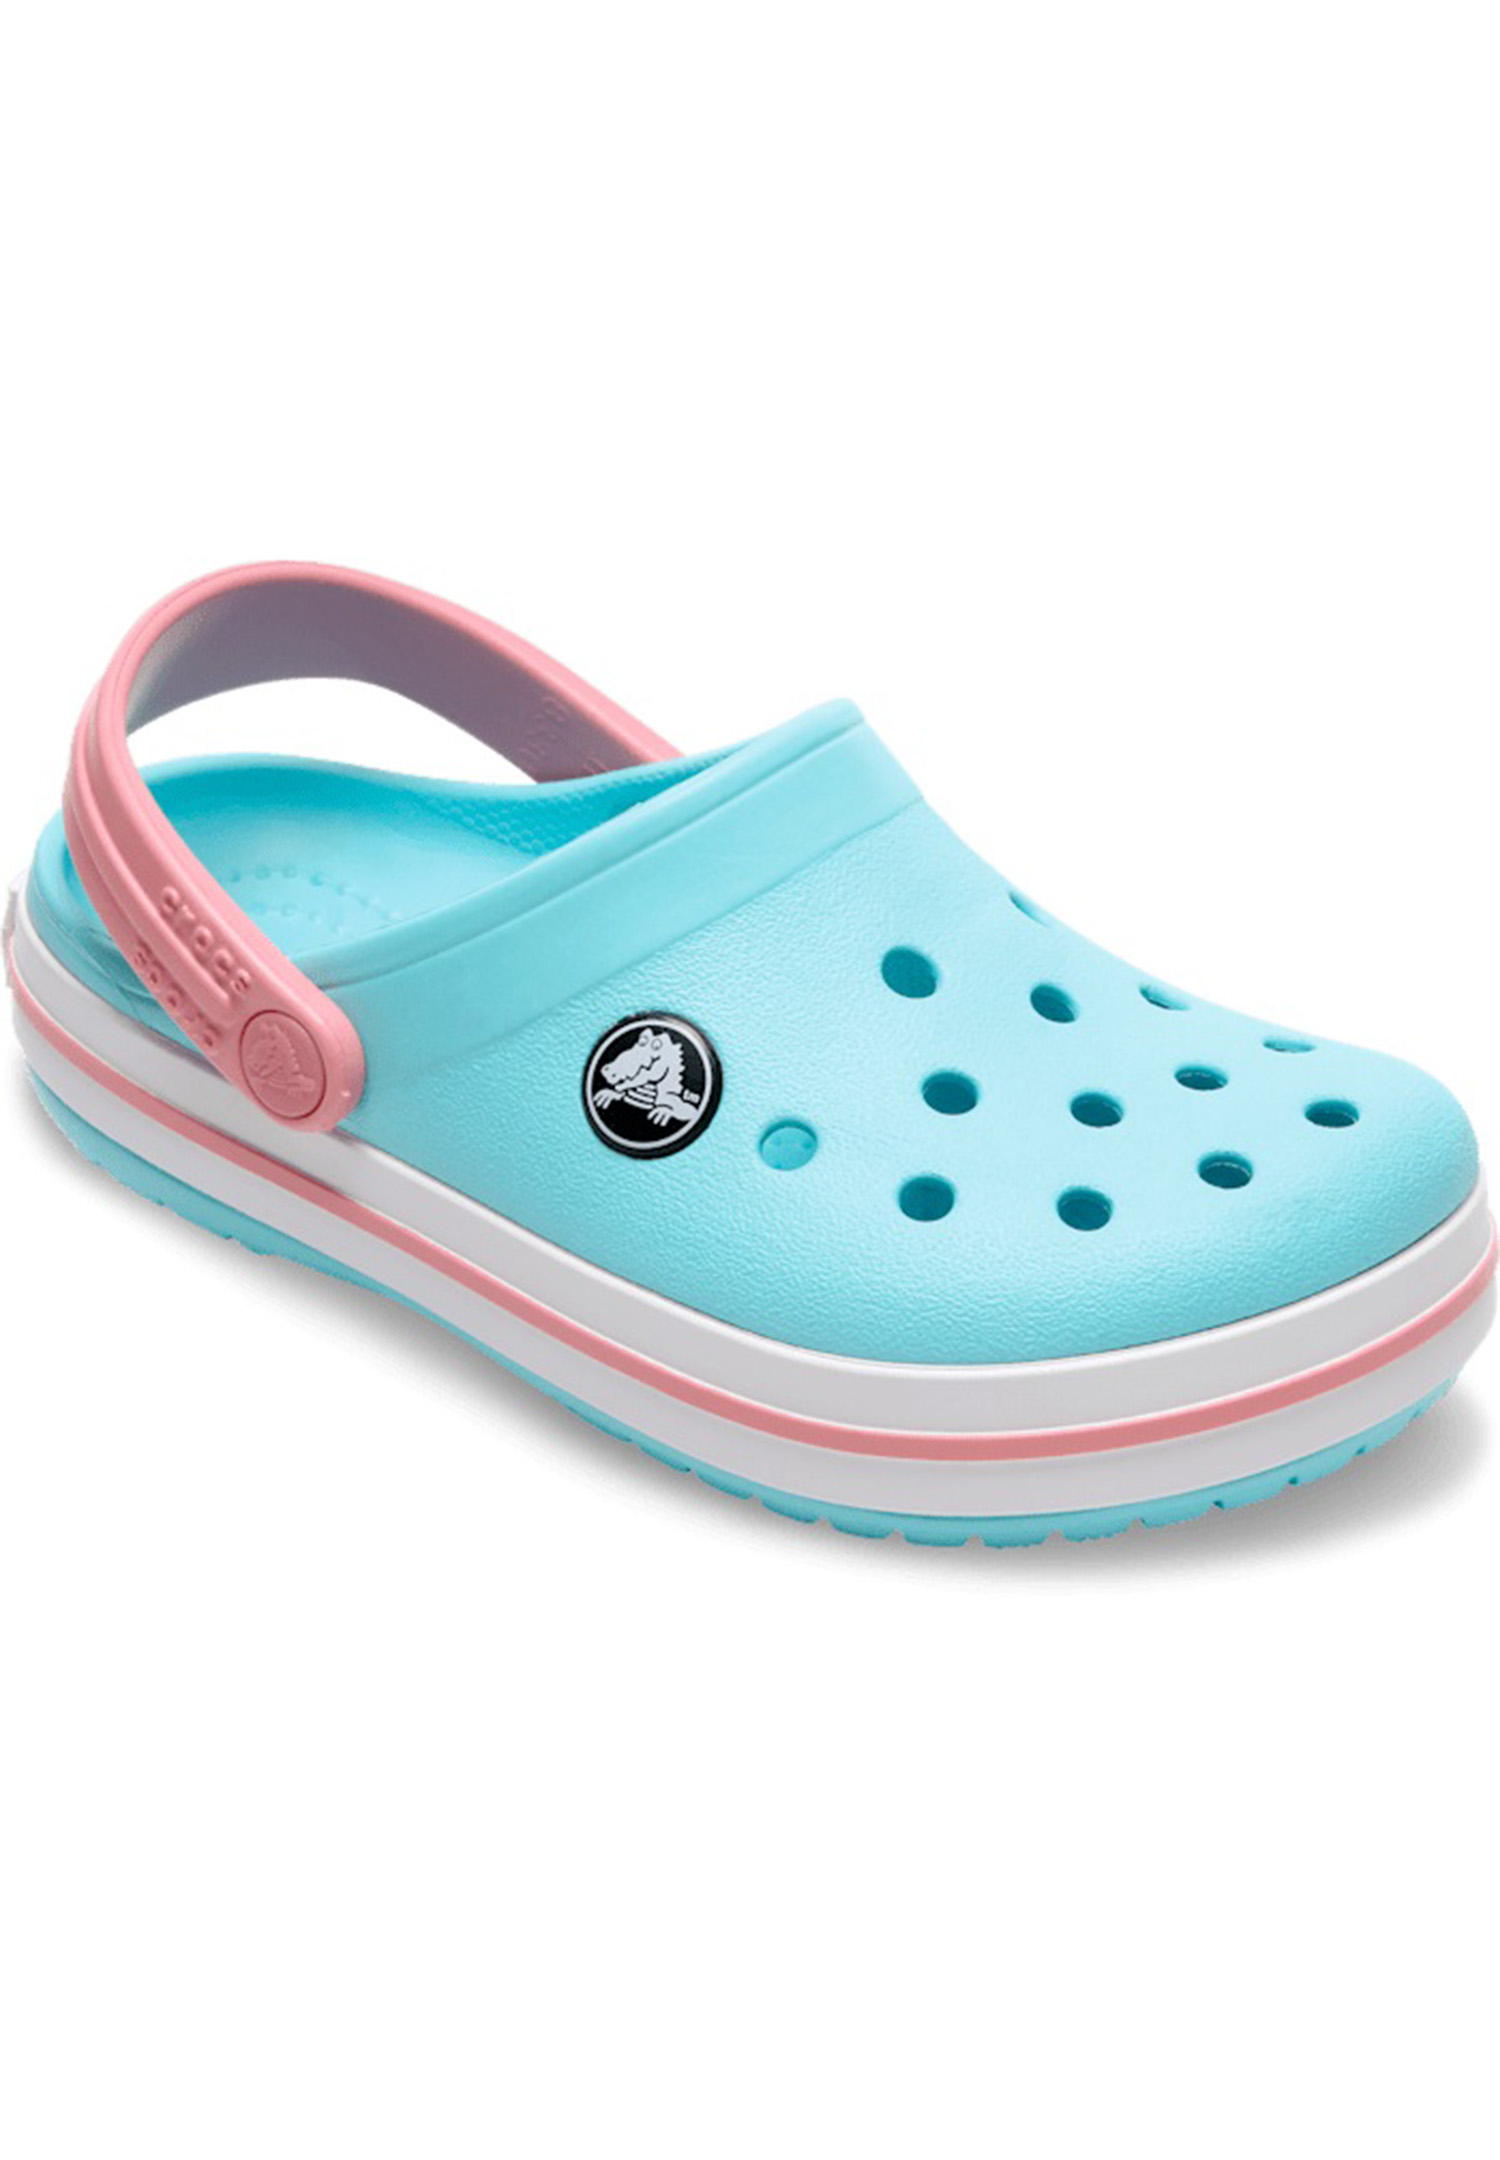 Crocs Kids Crocband Clog Unisex Kinder Schuhe Sandalen 207006 Türkis 